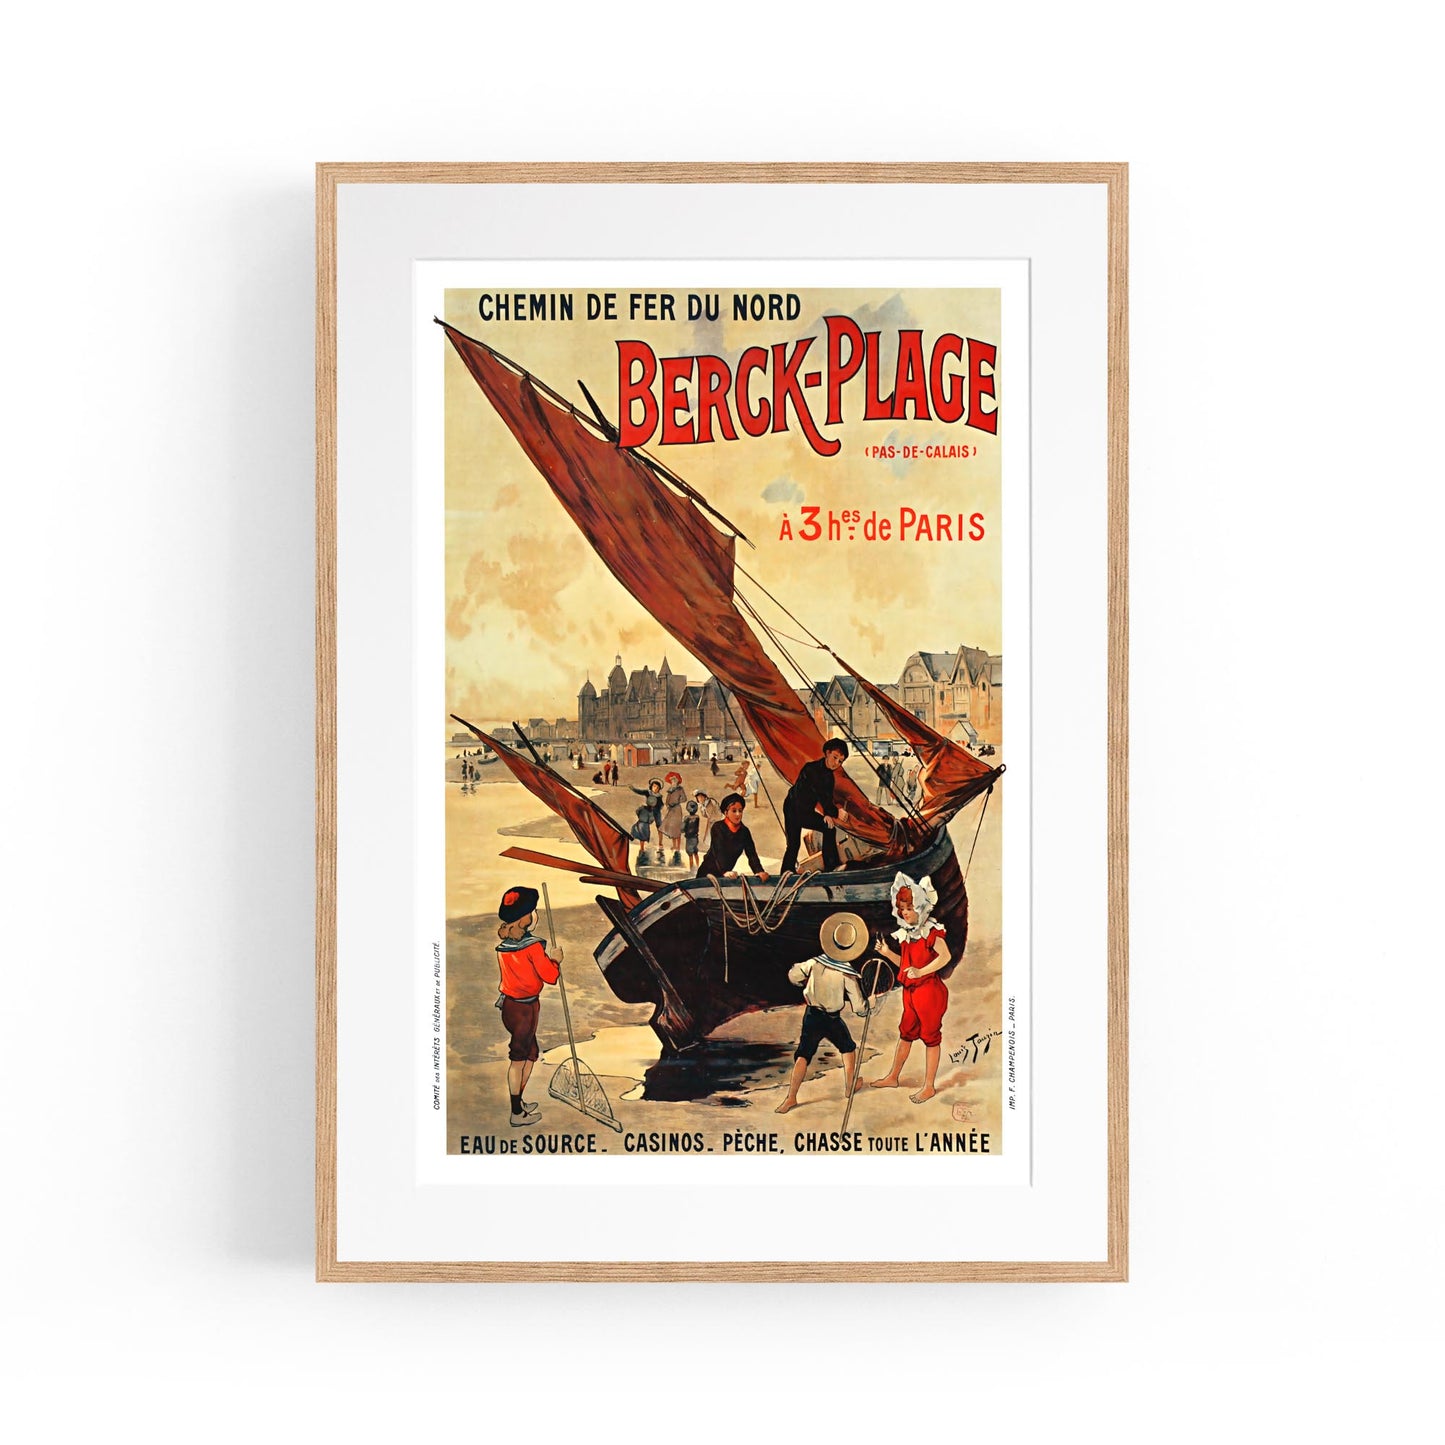 Berck-Plage, France "Chemin de Fer du Nord" | Framed Vintage Travel Poster